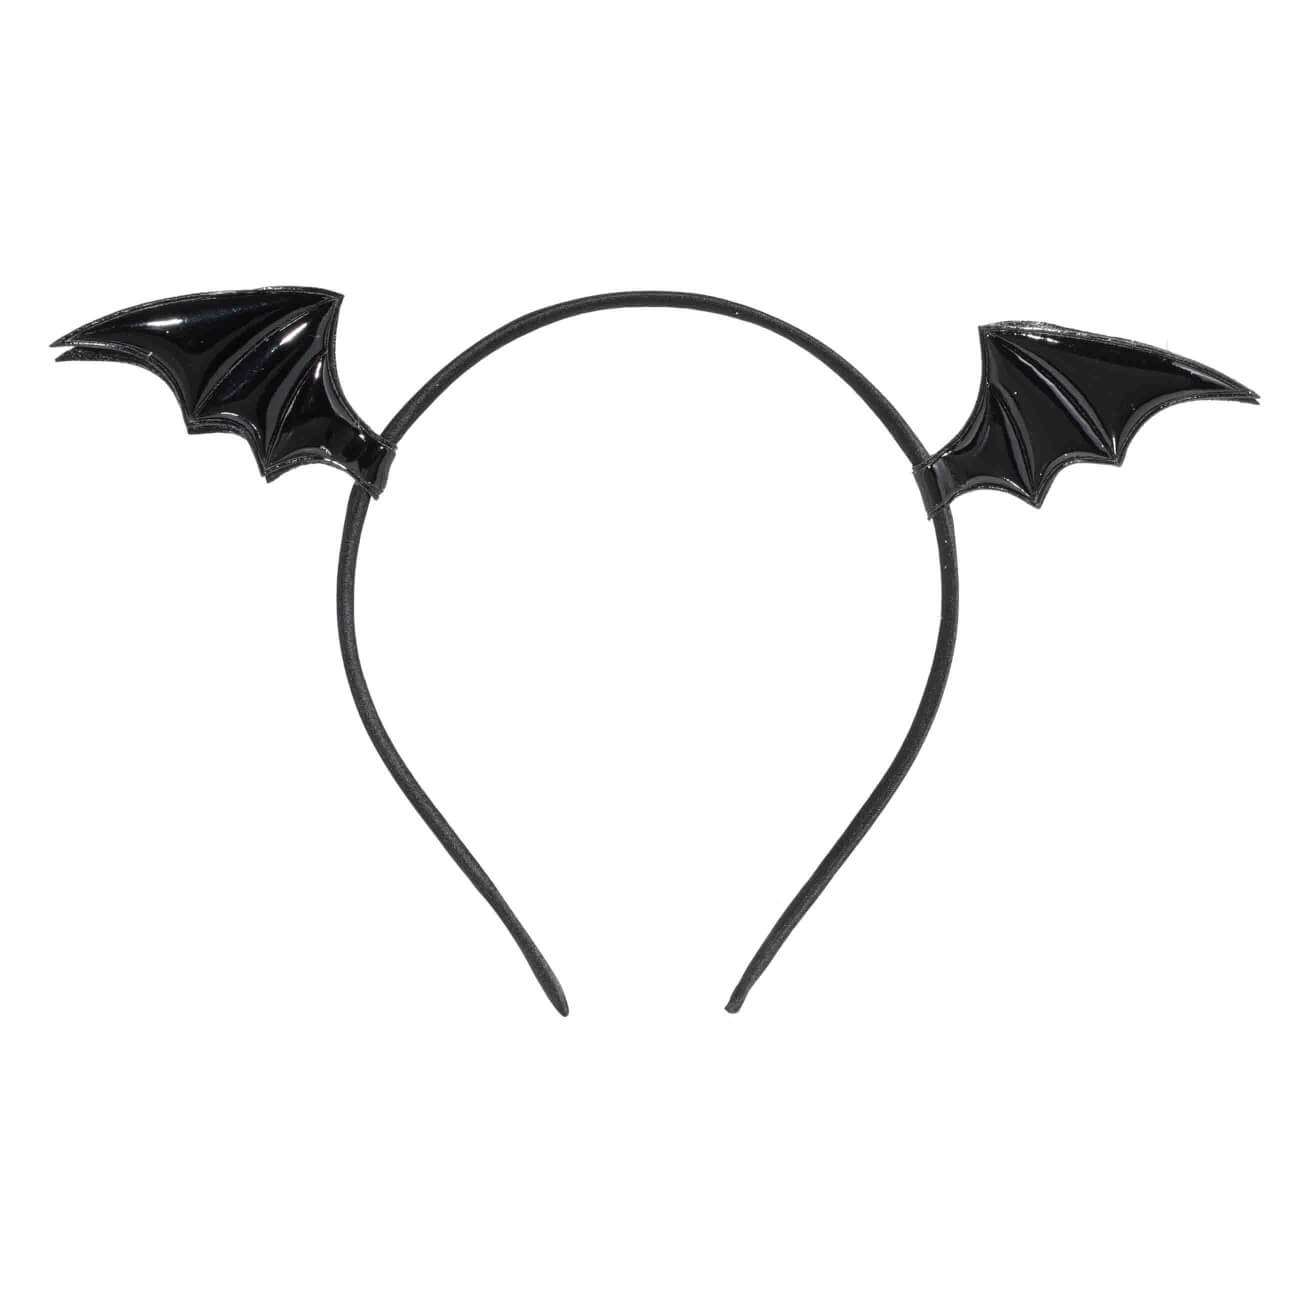 Ободок карнавальный, 15х13 см, полиэстер/пластик, черный, Крылья дракона, Hairstyle